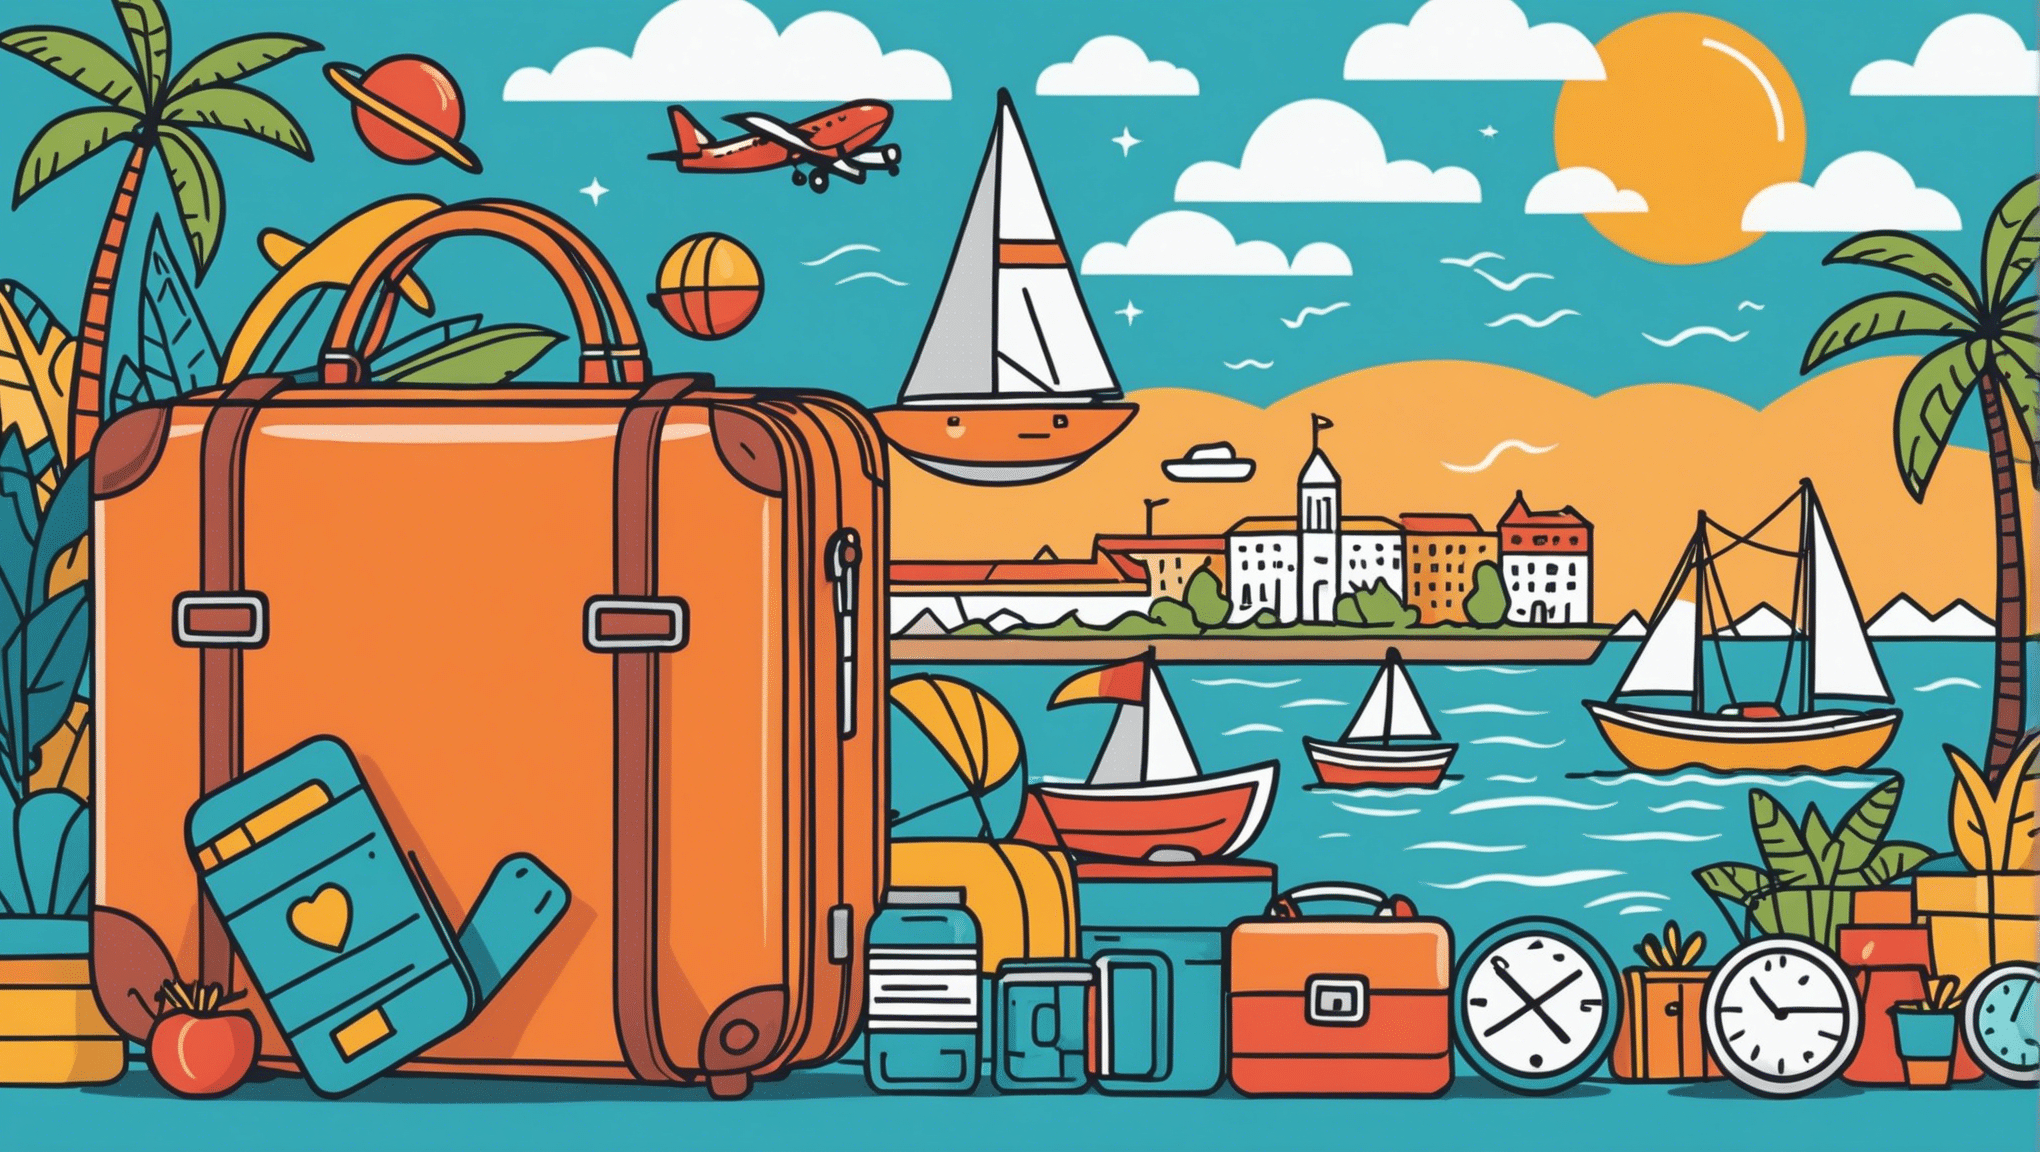 Descubra cómo optimizar su presupuesto de viaje para aprovechar al máximo su dinero mientras viaja.